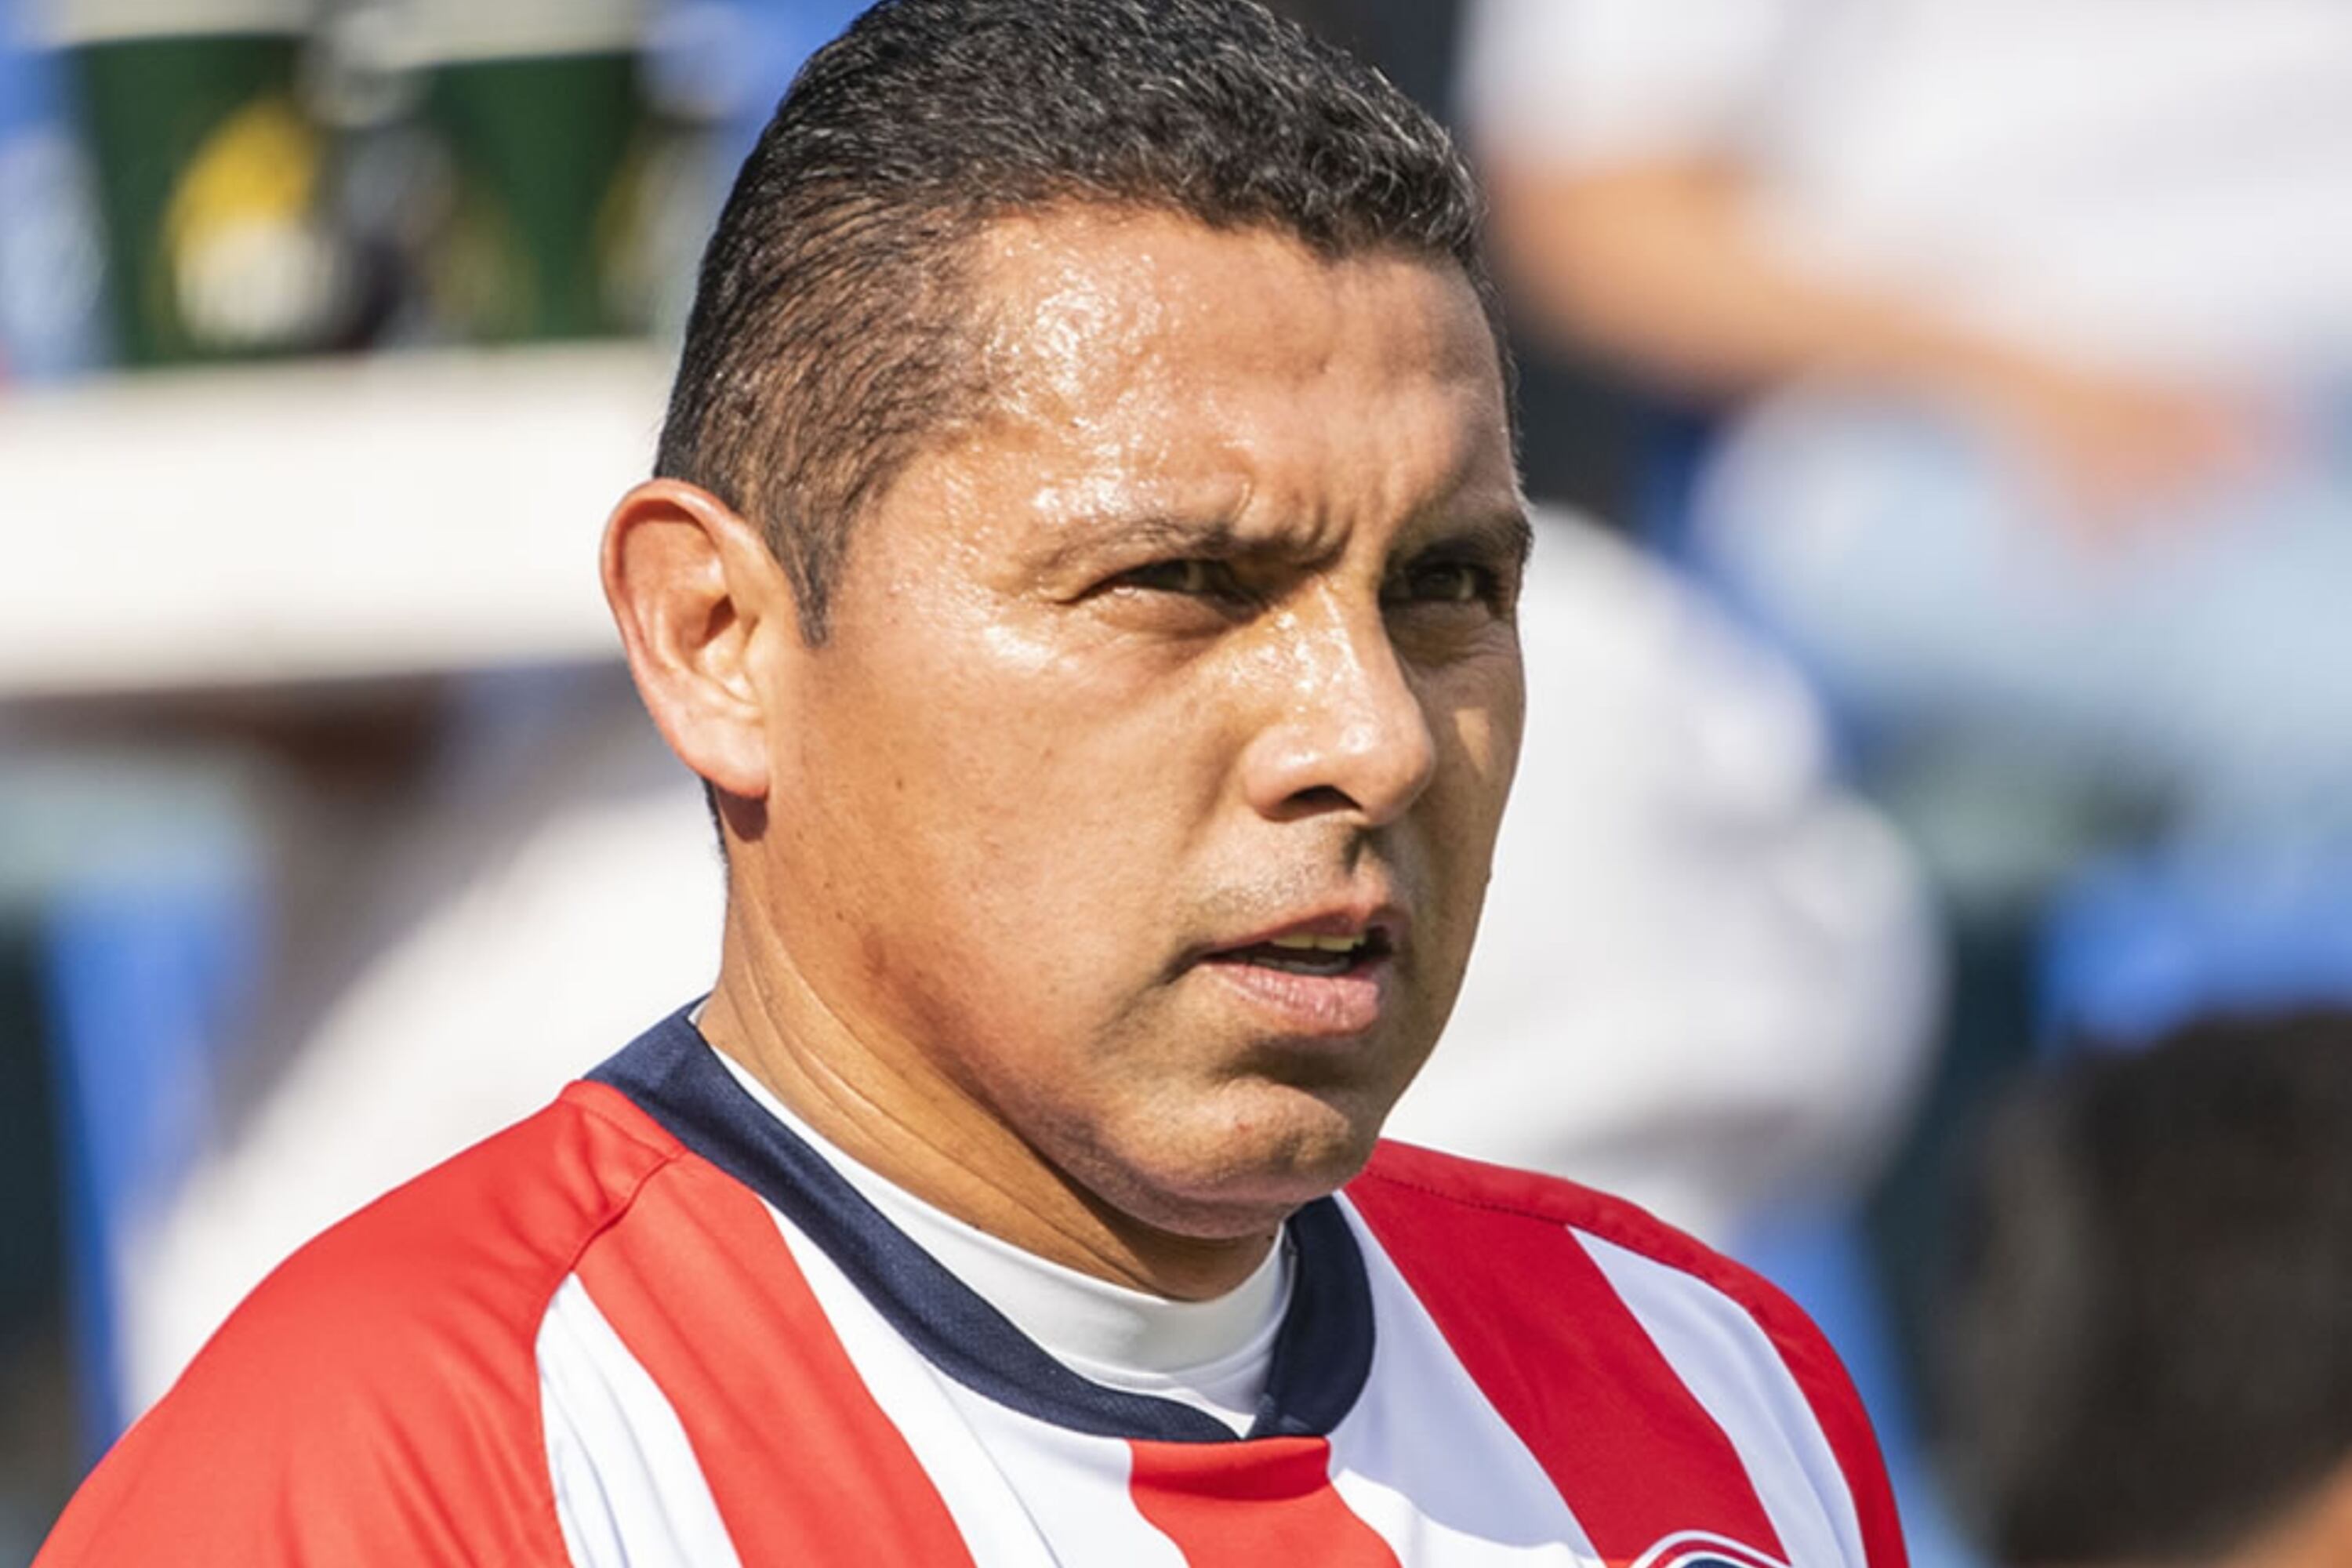 El jugador más apático de Chivas de Guadalajara, según Ramón Morales